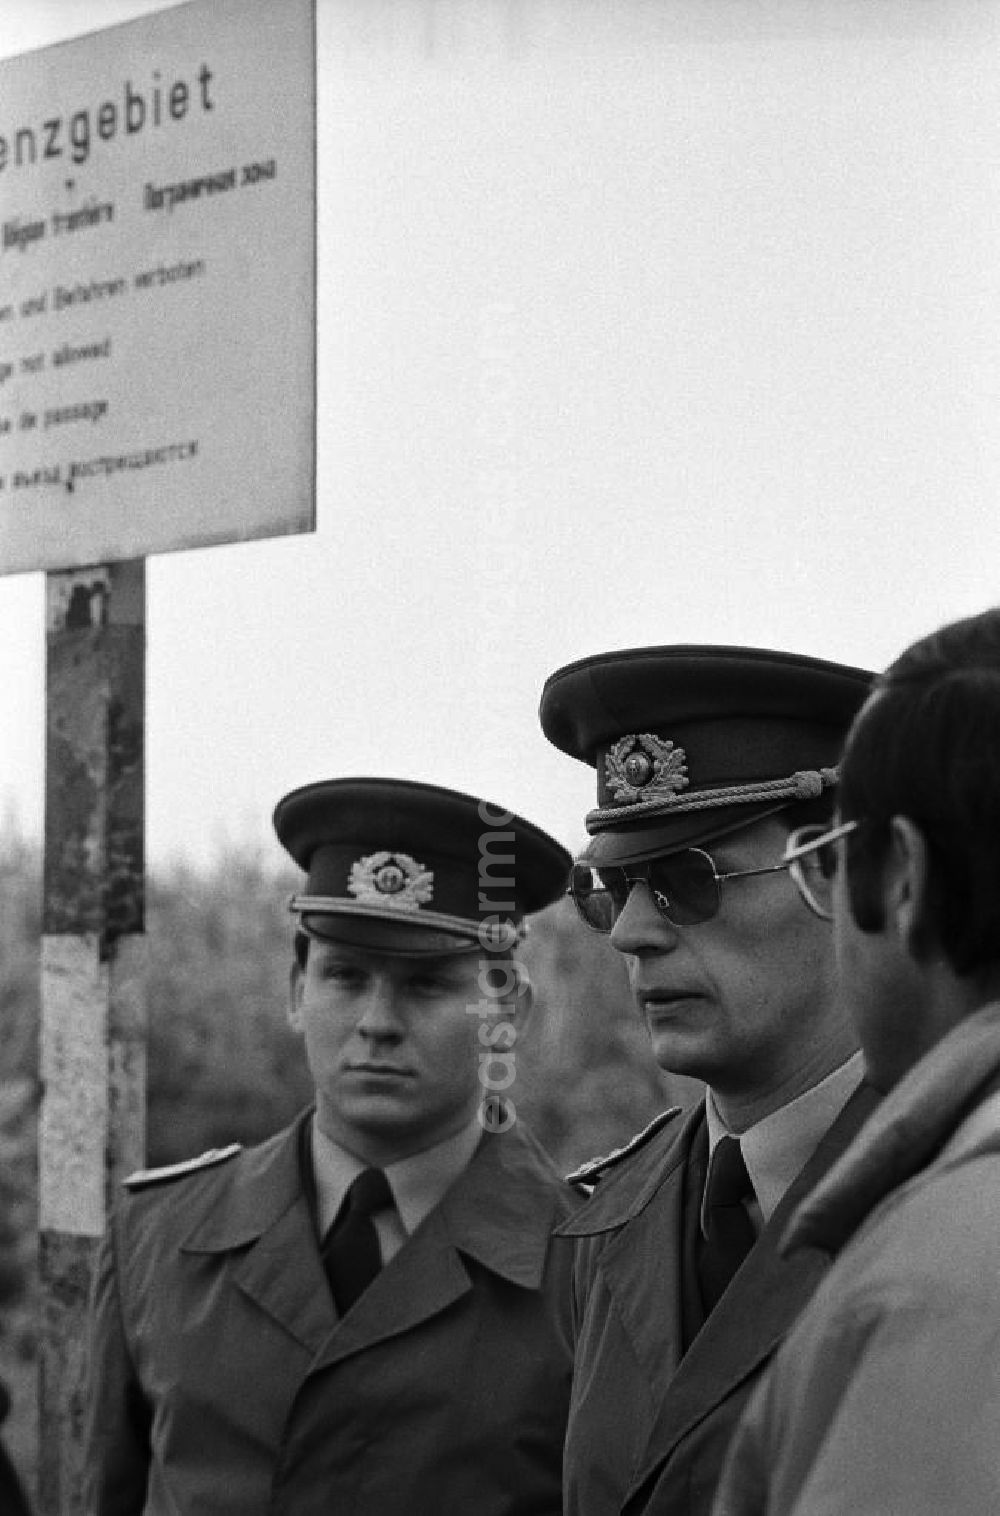 GDR photo archive: Hohen Neuendorf - Mauerfall / Volkspolizisten in Uniform stehen zusammen an der Grenze am ehemaligen Sperrgebiet Stolpe, dahinter Hinweis-Schild Grenzgebiet.